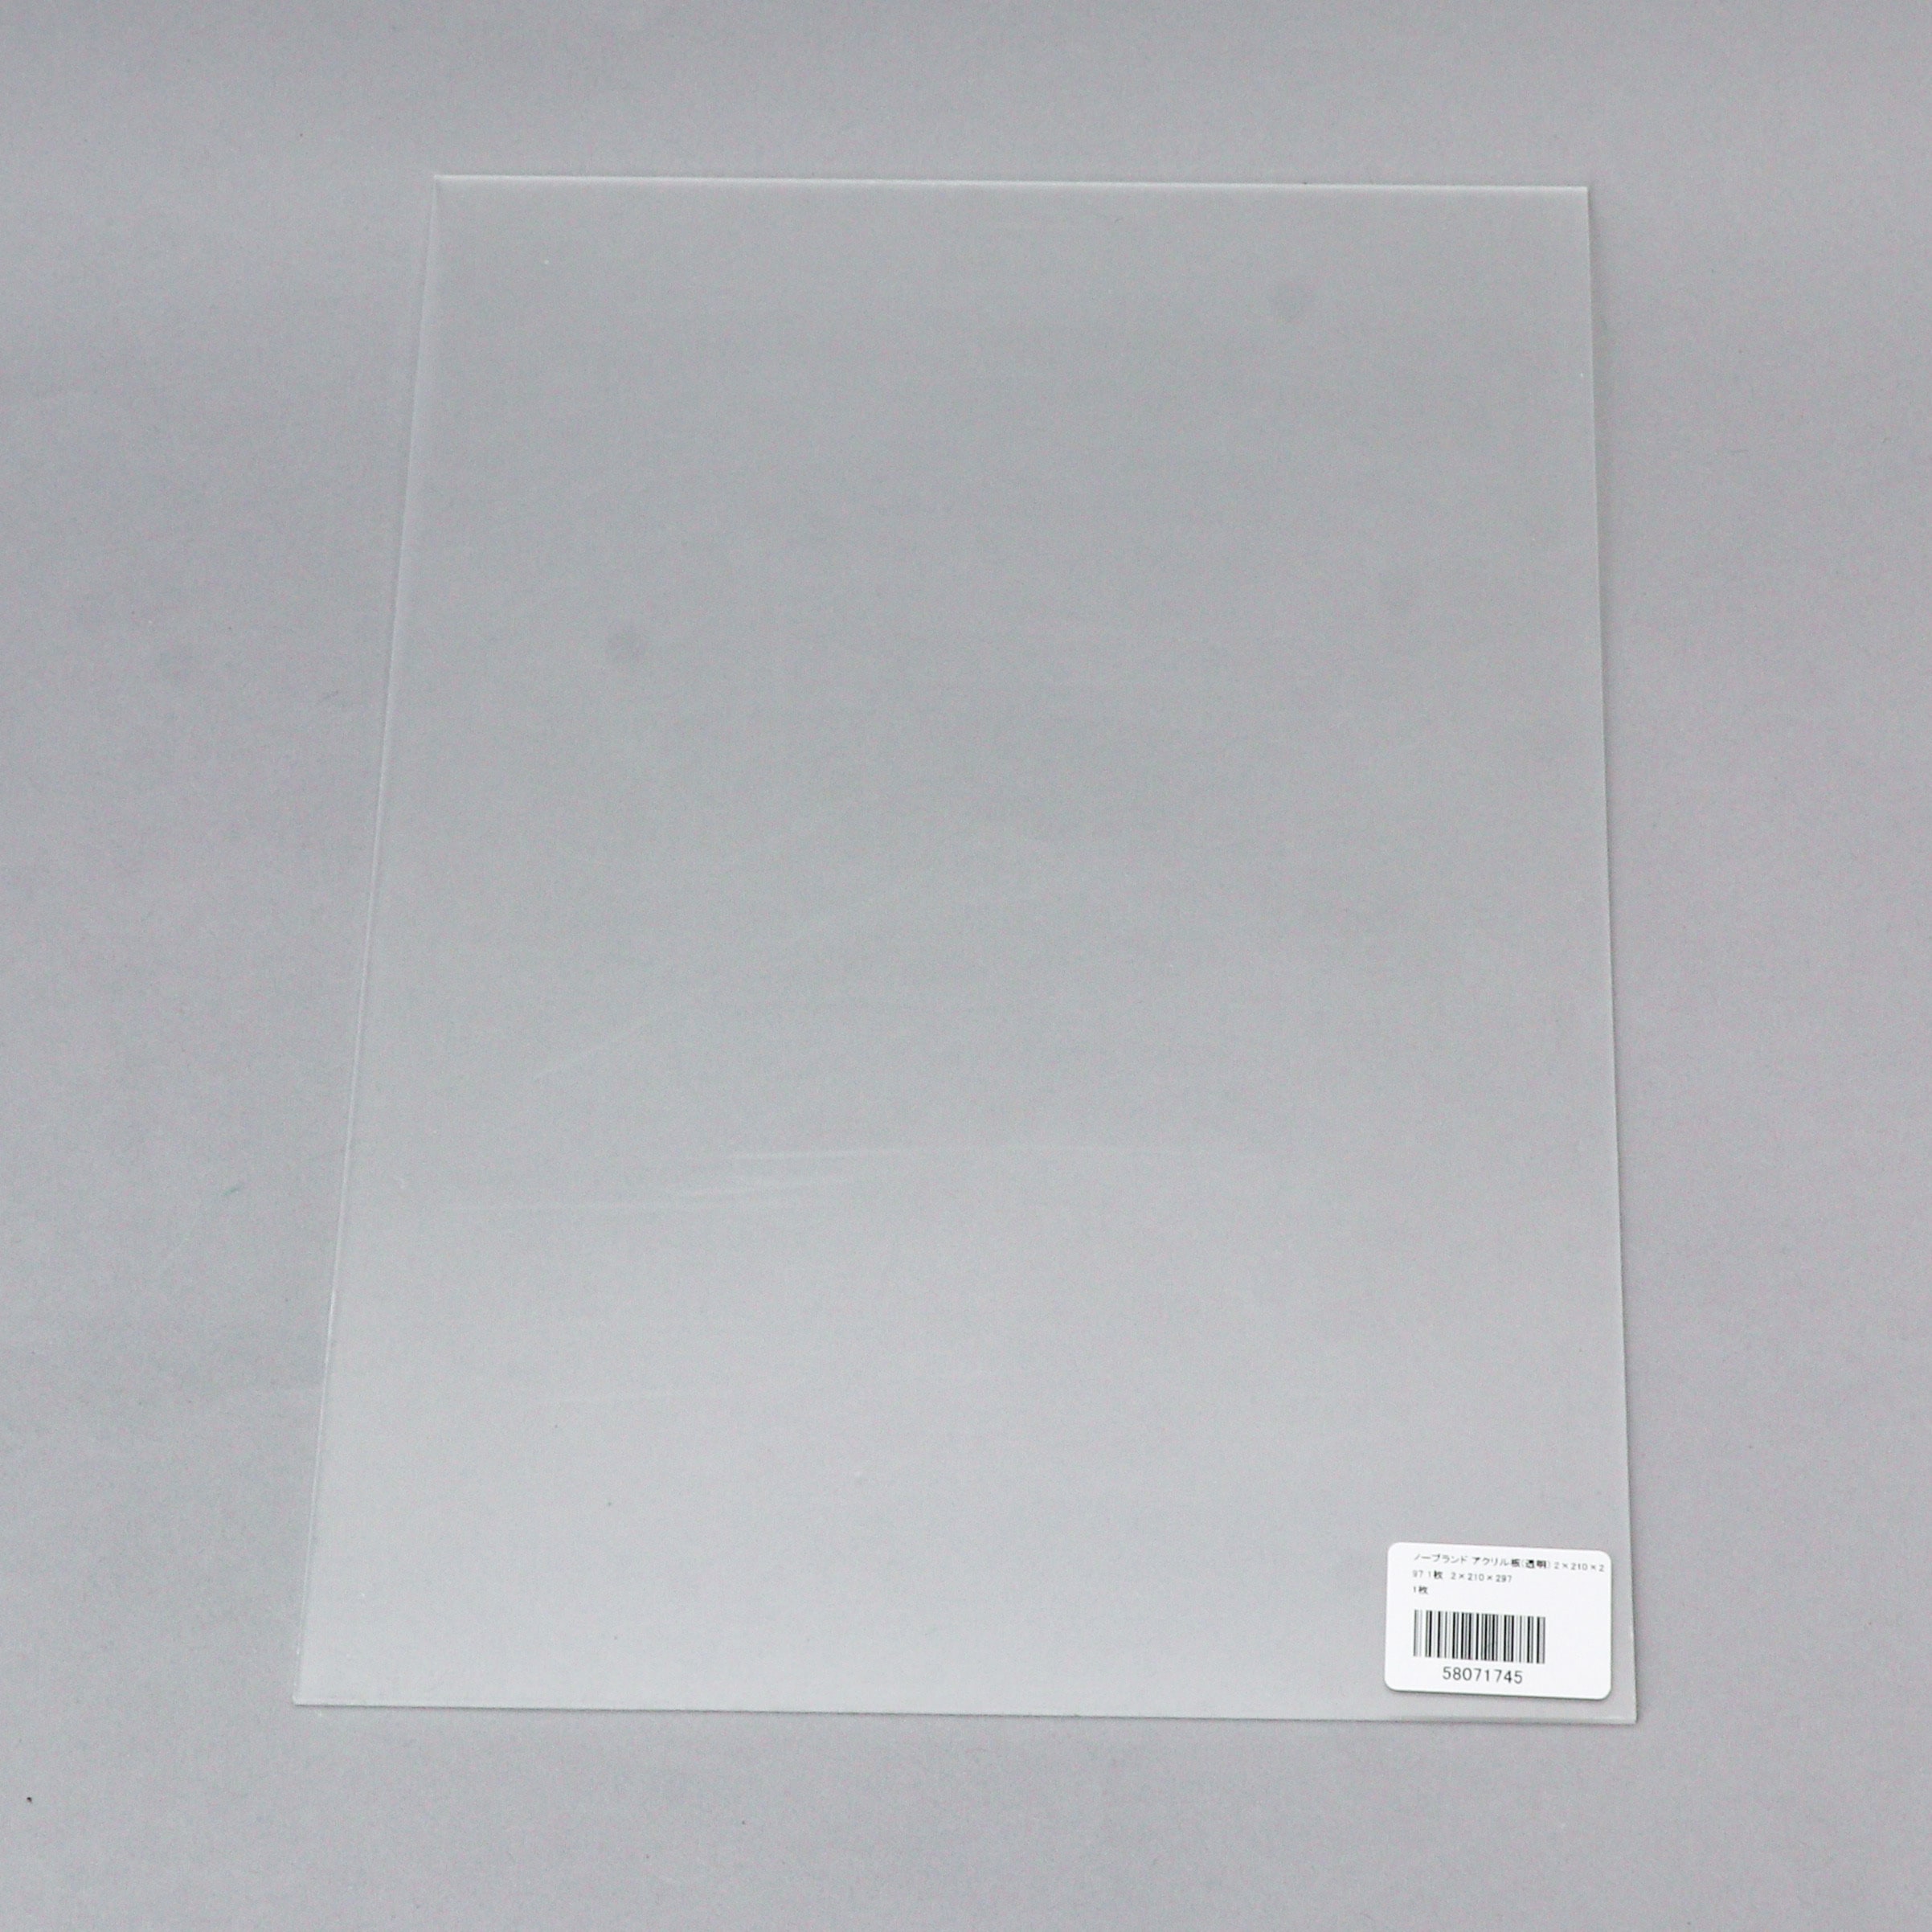 アクリサンデーEX板 アクリル 透明(EX001) 厚み2mm 300×300mm 押出グレード 連続キャスト方式 プラスチック DIY